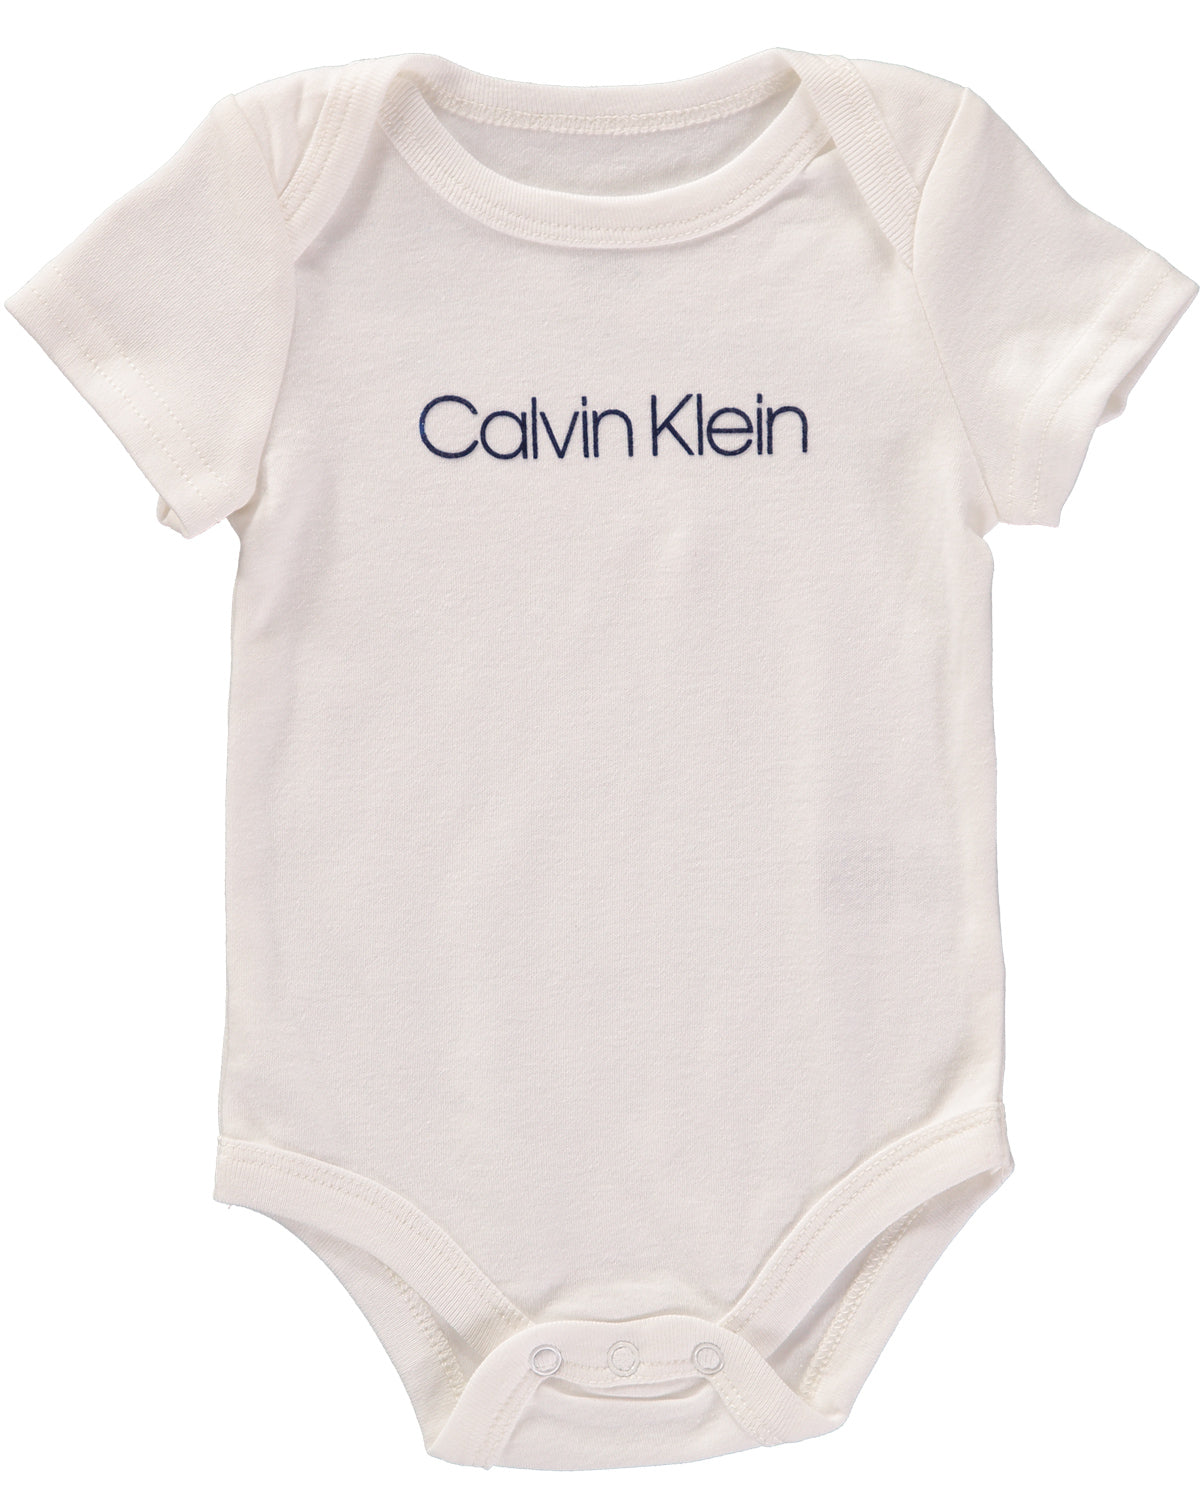 Calvin Klein Boys 0-9 Months 3-Piece Bodysuit Jacket Set